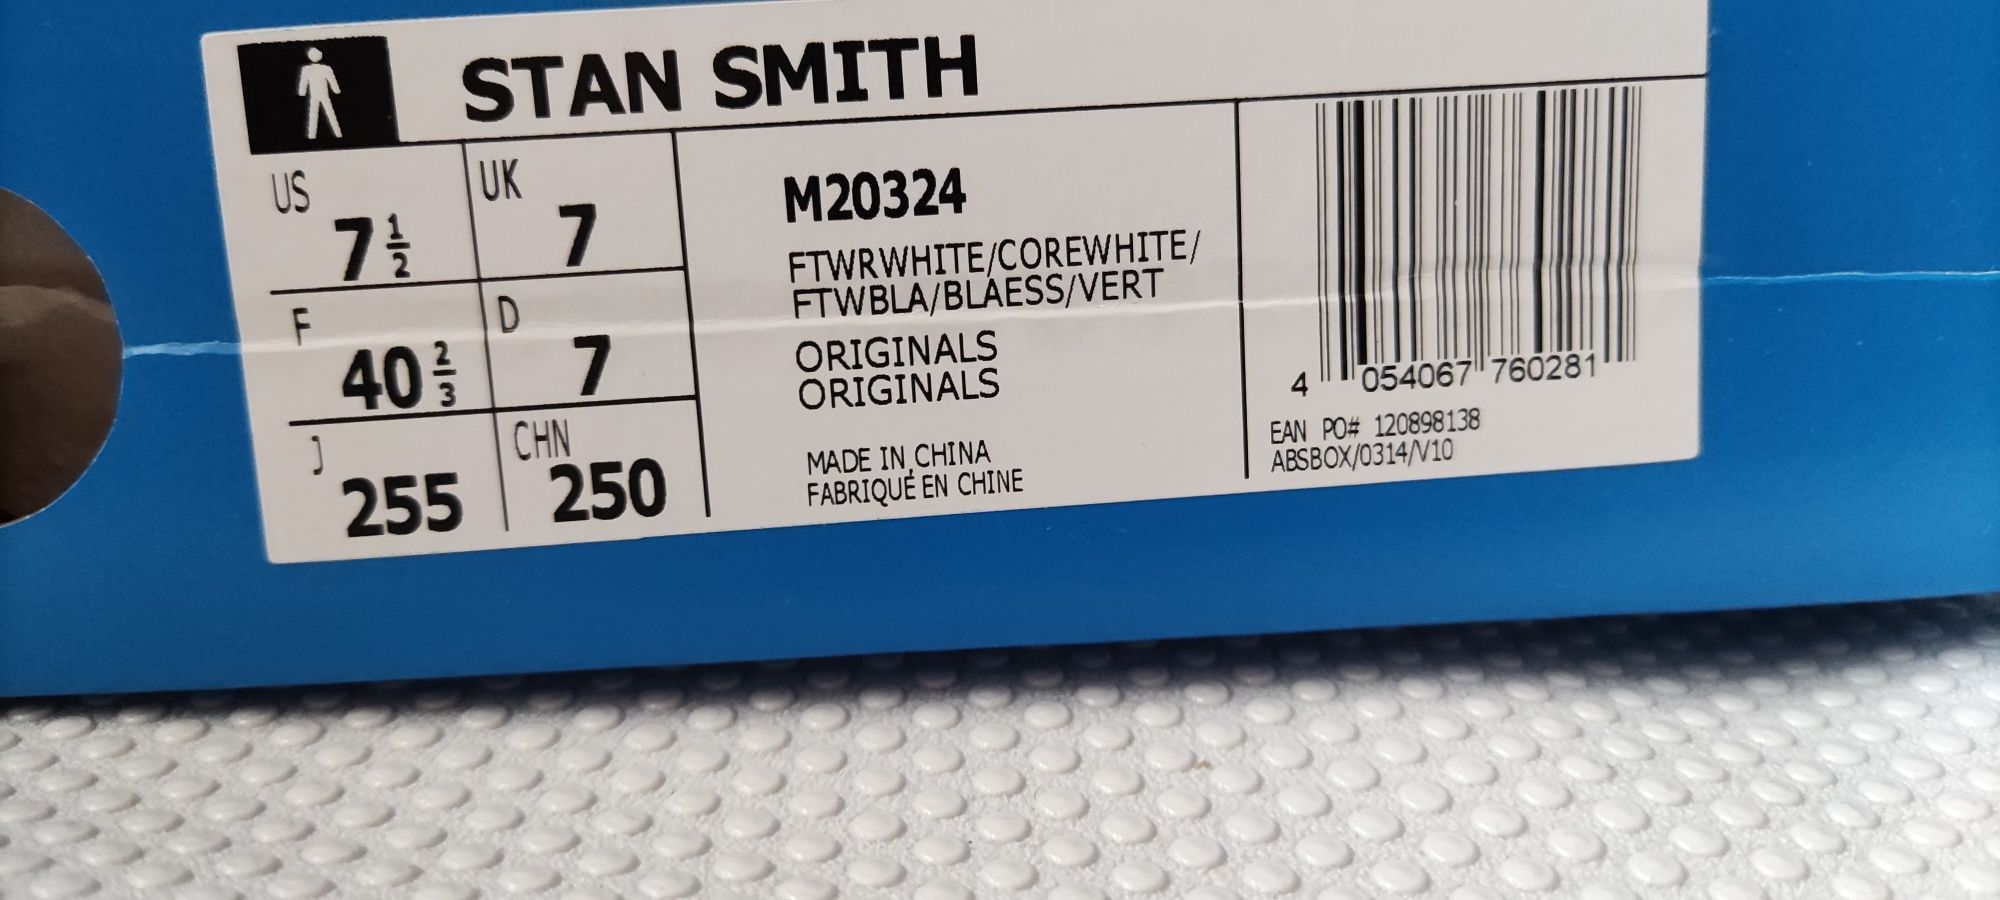 Adidas Nowe Buty r. 40 25.5 cm wkładka Model Stan Smith